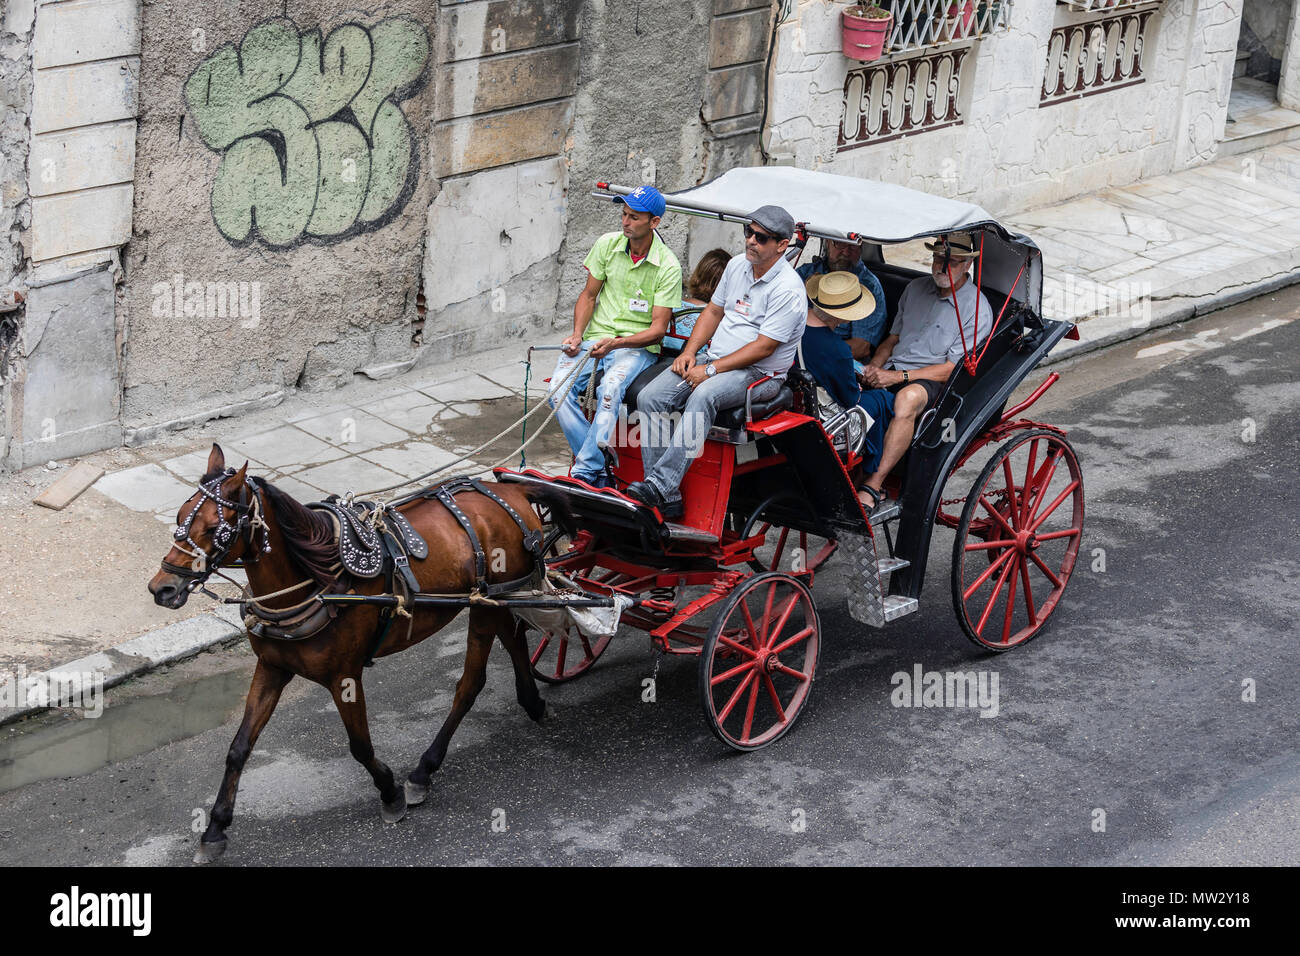 Las carretas tiradas por caballos, conocida localmente como entrenadores para alquilar en La Habana, Cuba Foto de stock